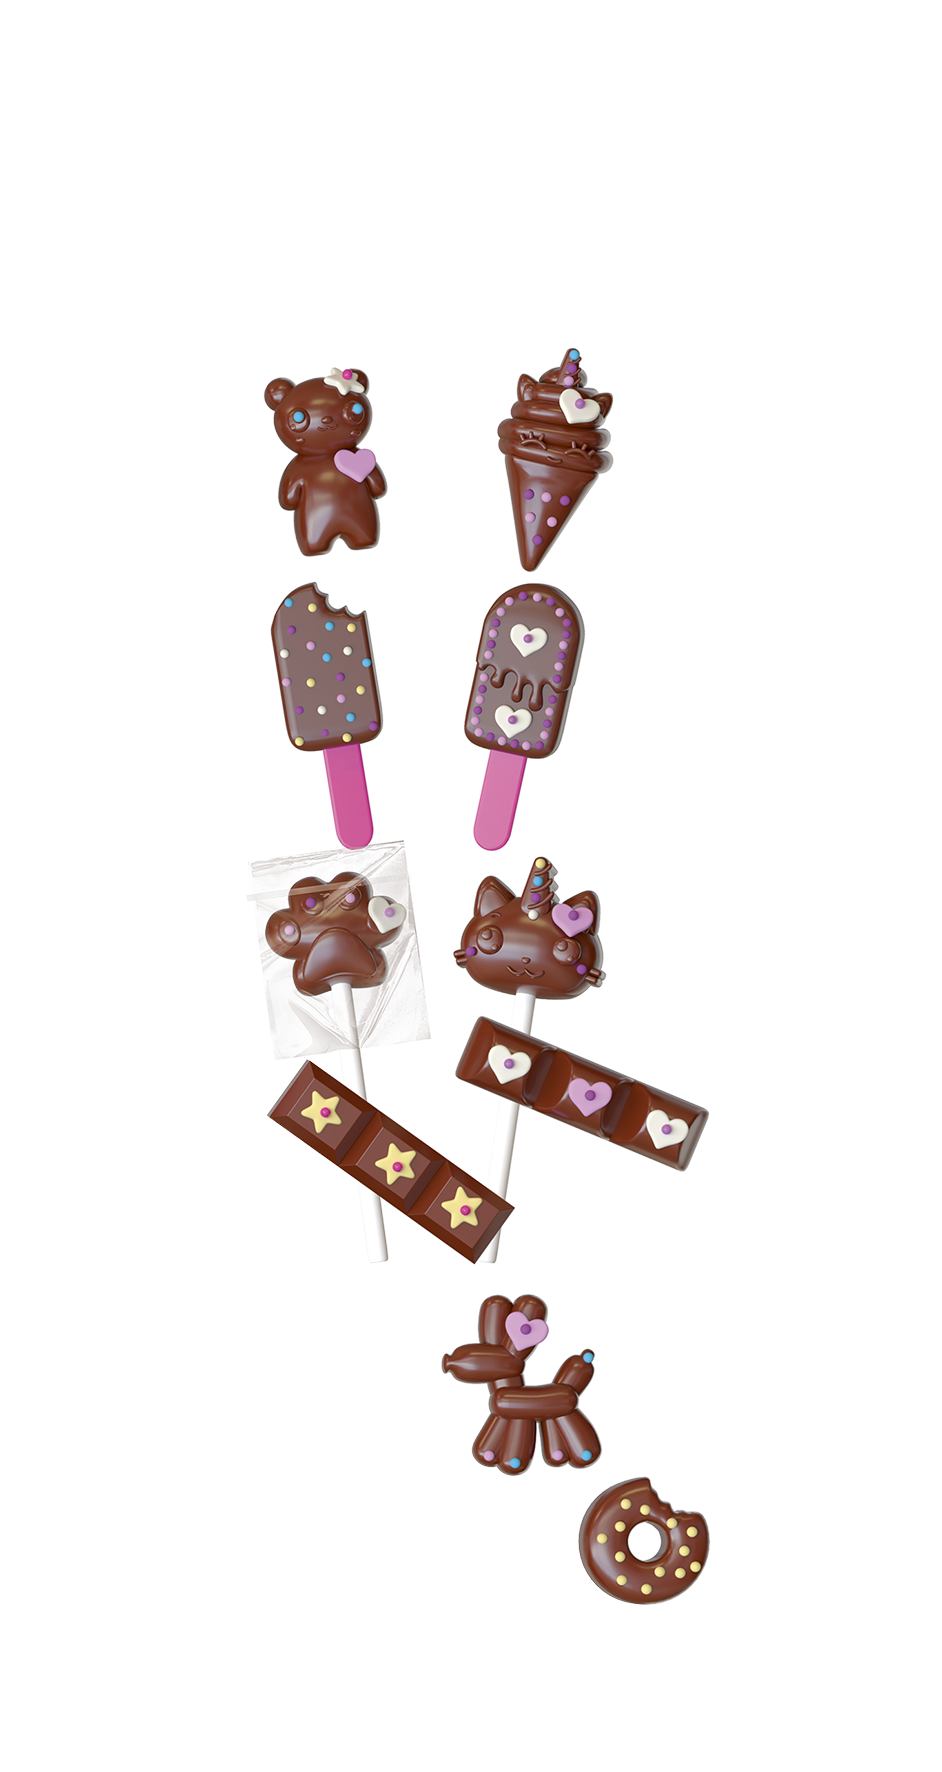 Mini Délices - Atelier Chocolat 4 en 1 Lansay : King Jouet, Cuisine et  dinette Lansay - Jeux d'imitation & Mondes imaginaires